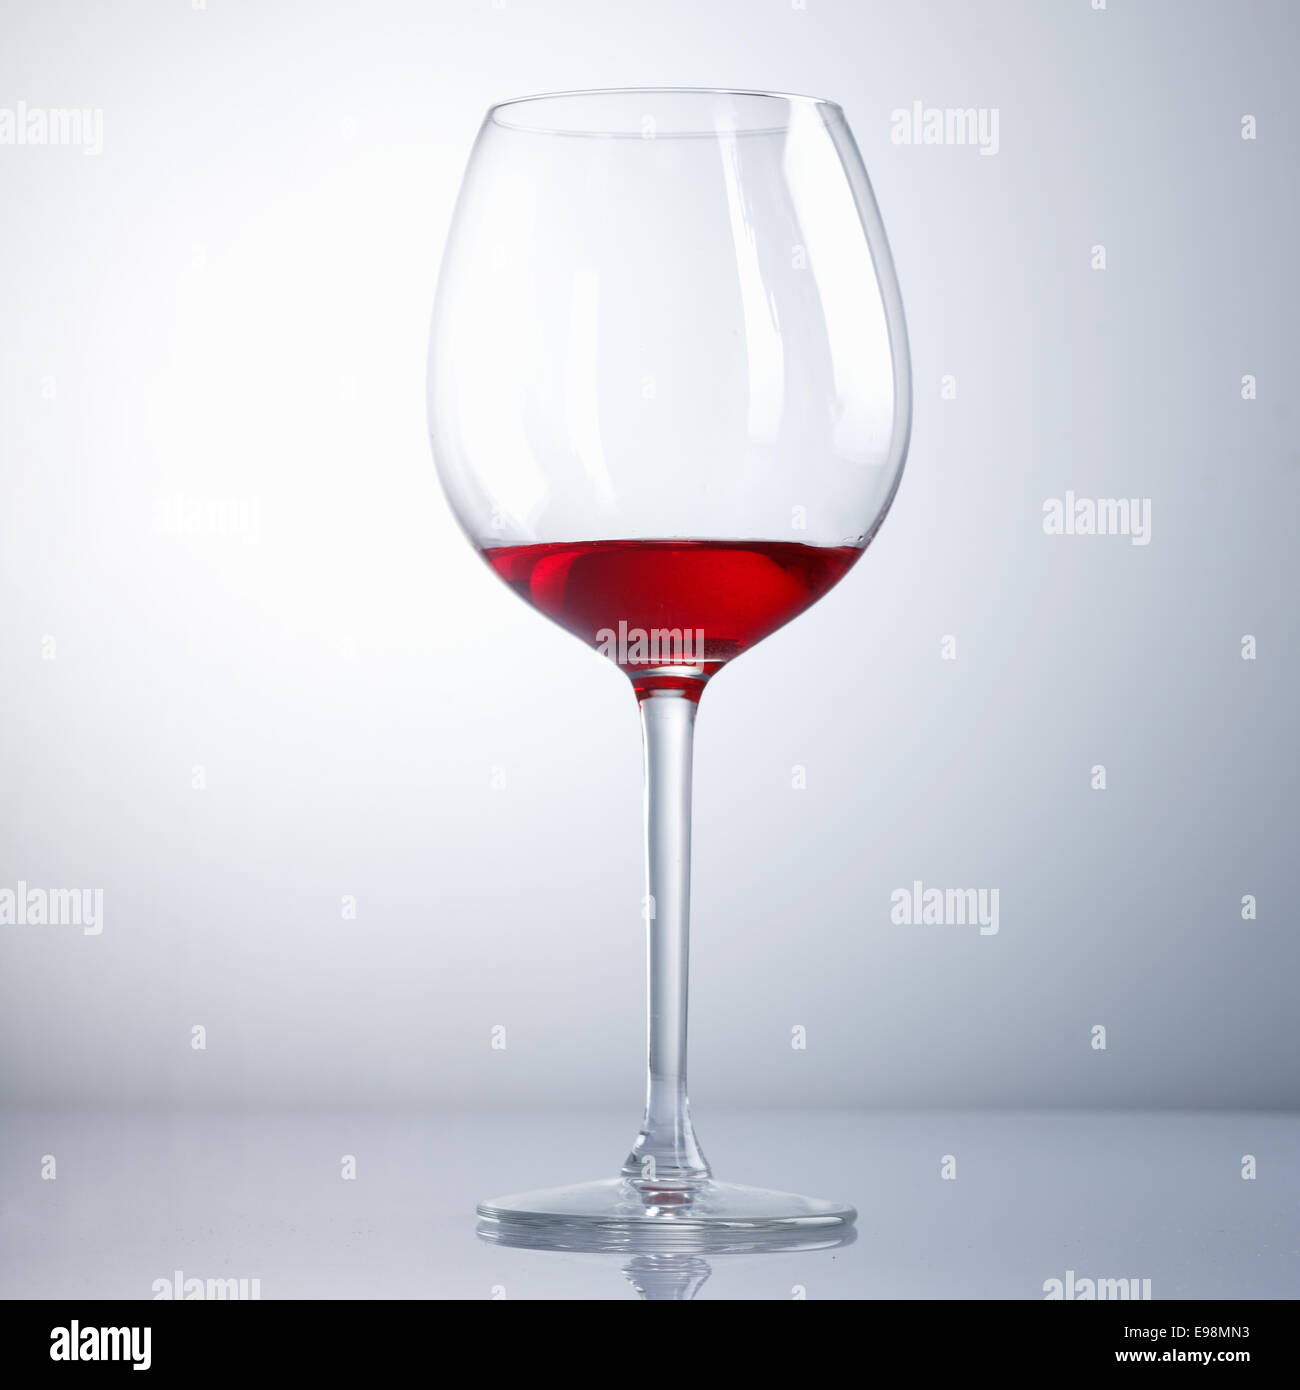 Halb betrunken Weinglas auf einem hellblauen Hintergrund mit Überlegung Stockfoto